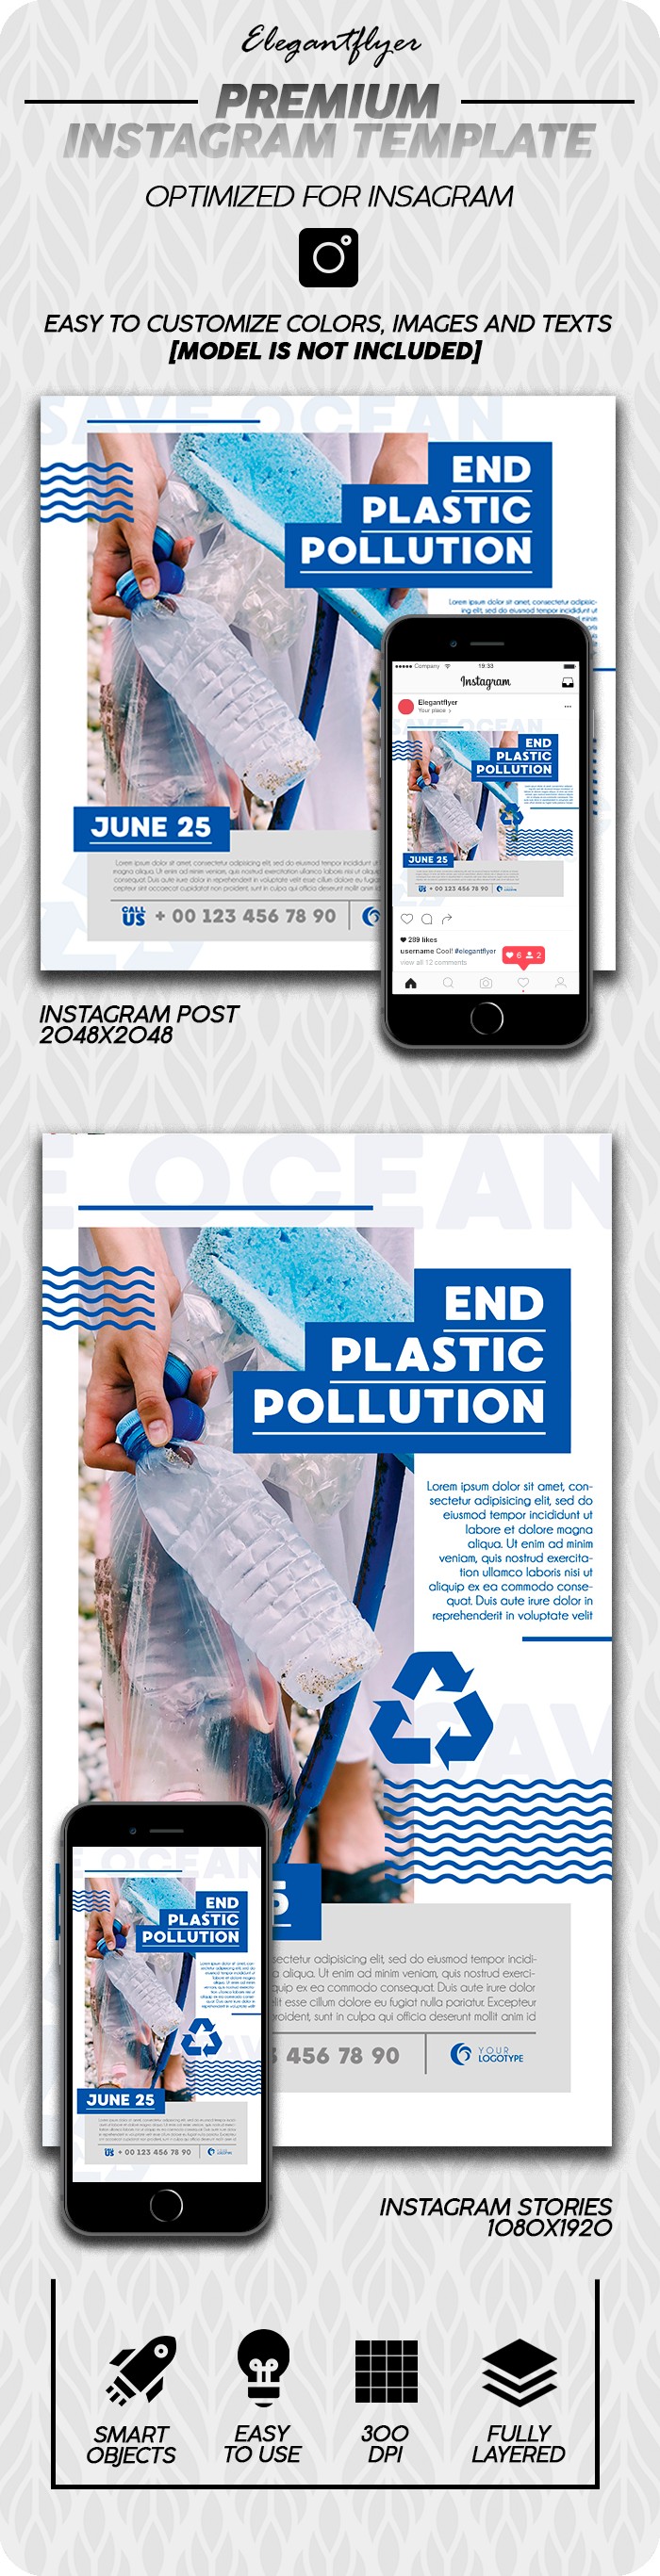 Marine Pollution Problems Instagram by ElegantFlyer